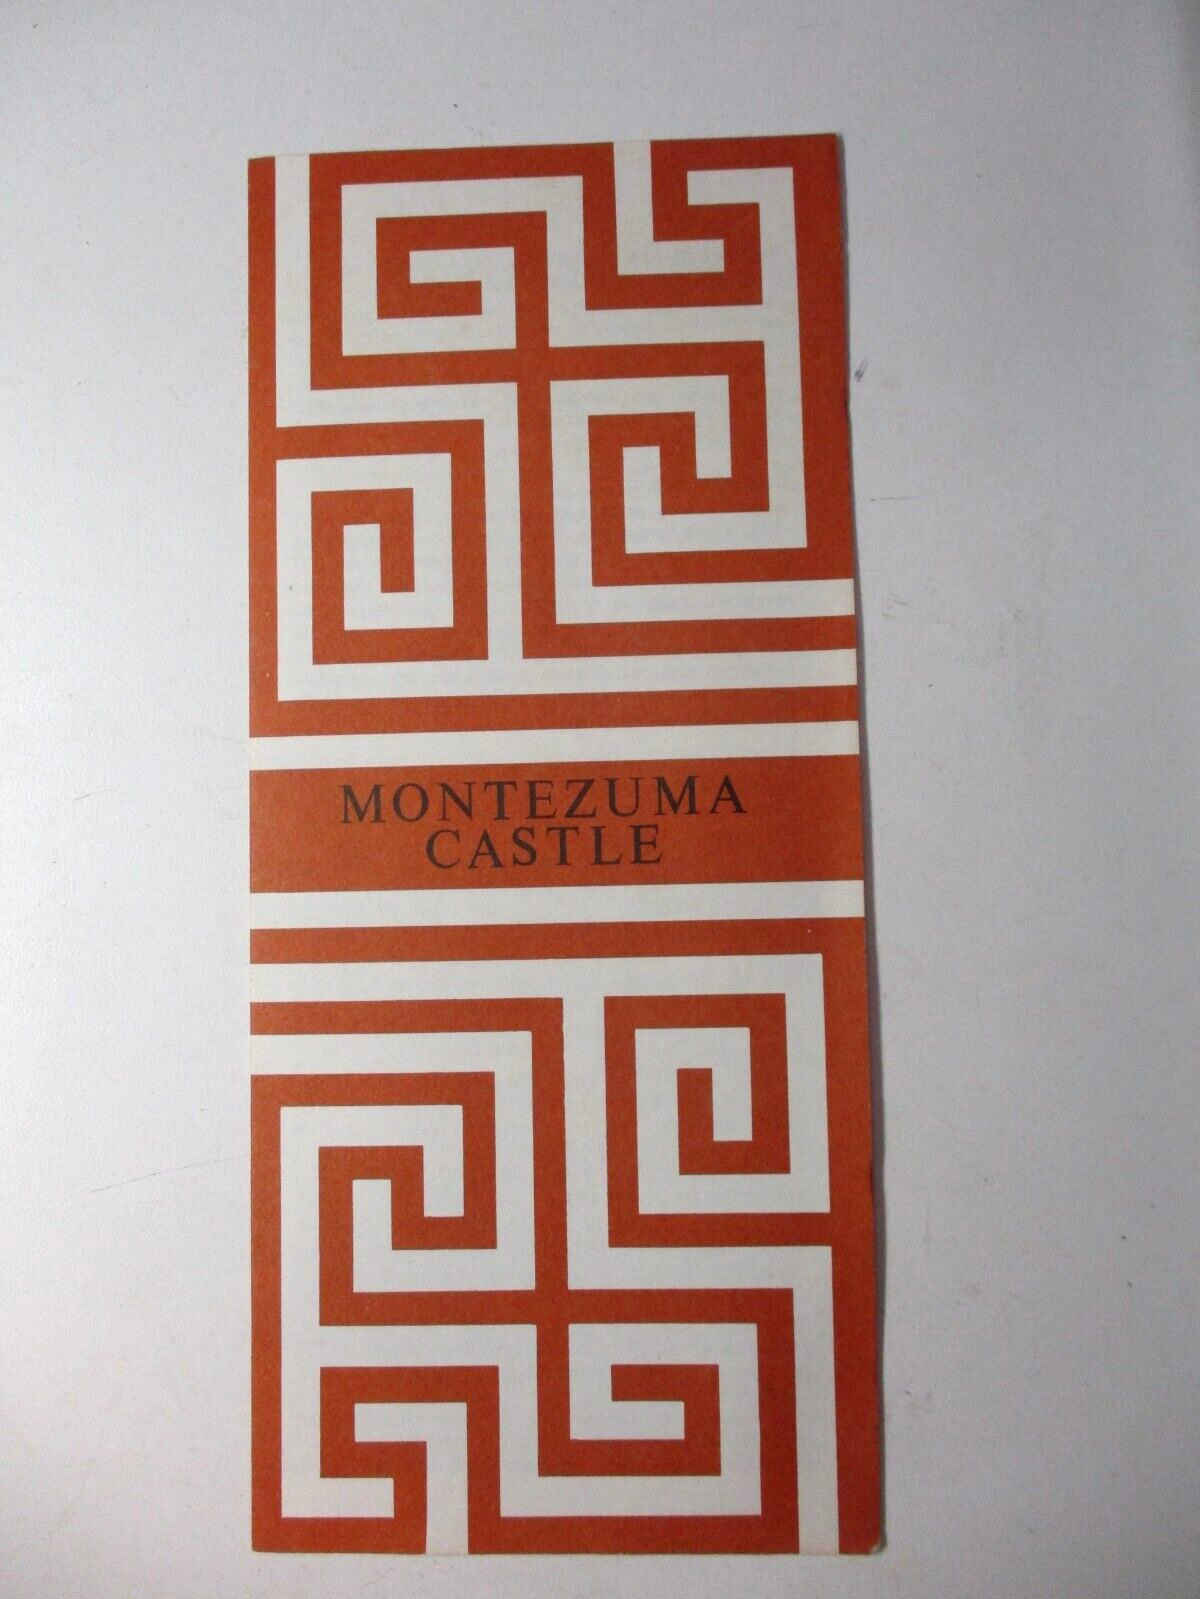 1979 National Park Services USA AZ Montezuma Castle Folder Map Guide Vintage